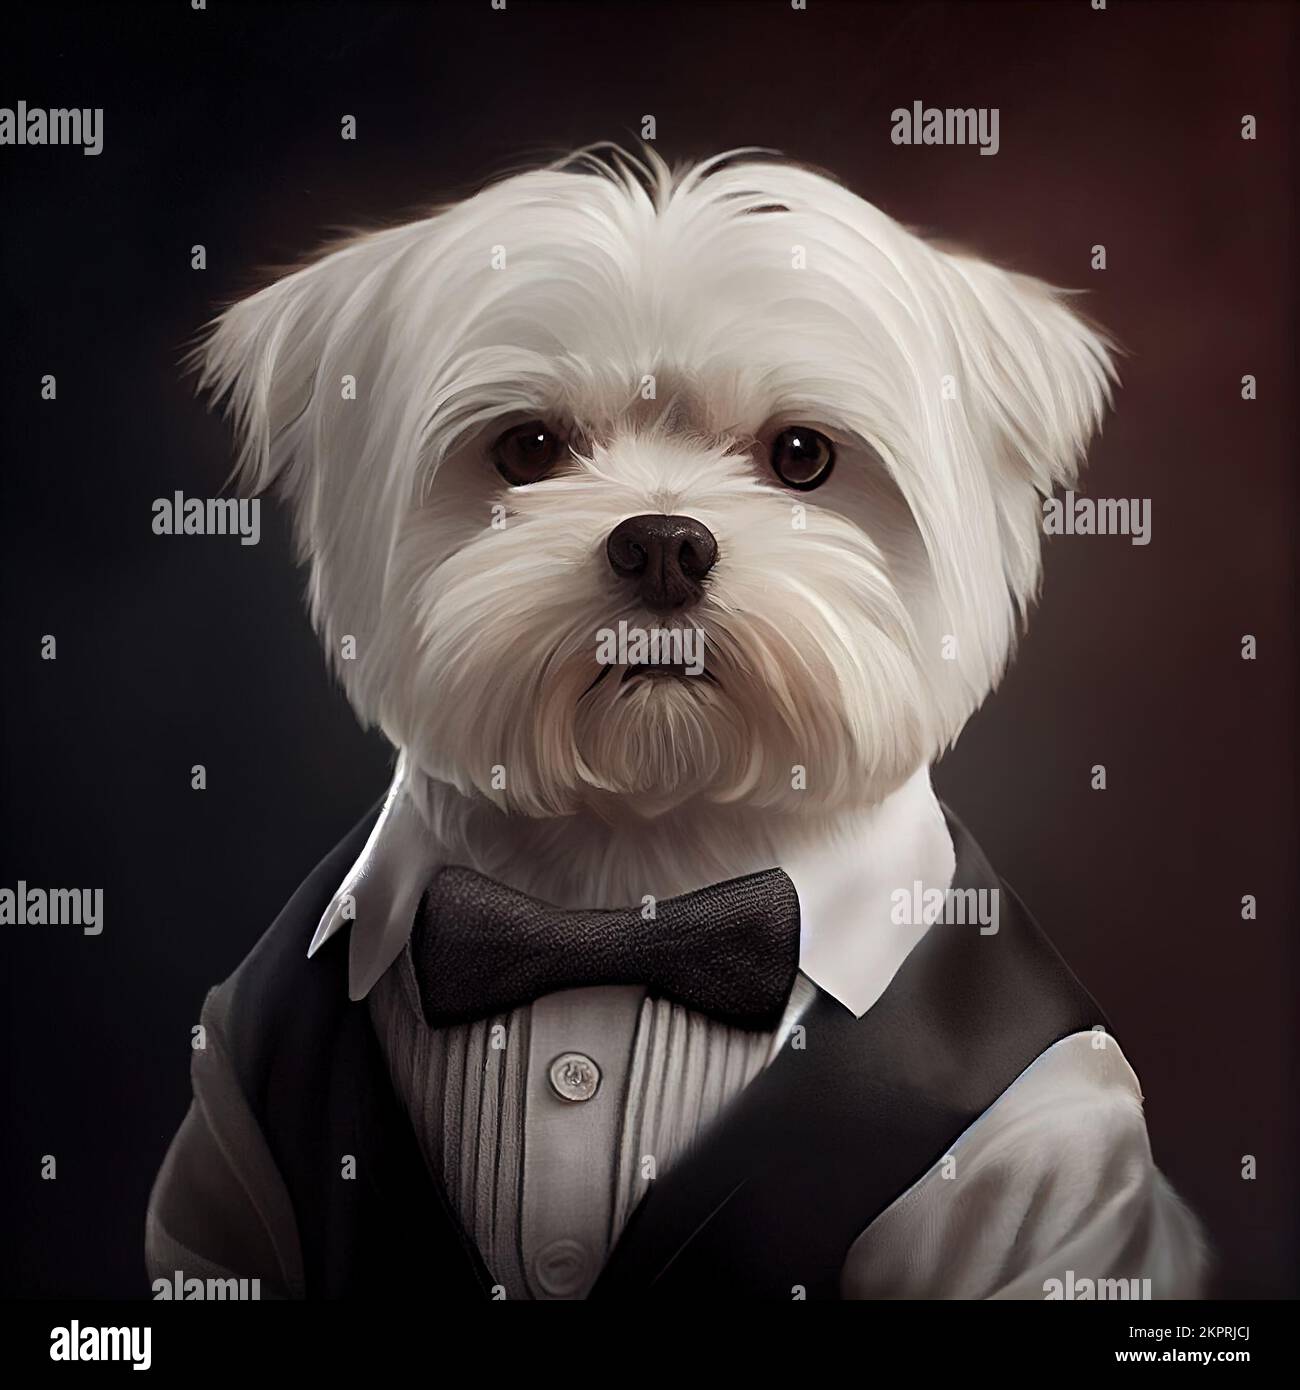 Studio anthropomorphique tourné d'un joli chien maltais en costume. Illustration générée numériquement. Banque D'Images